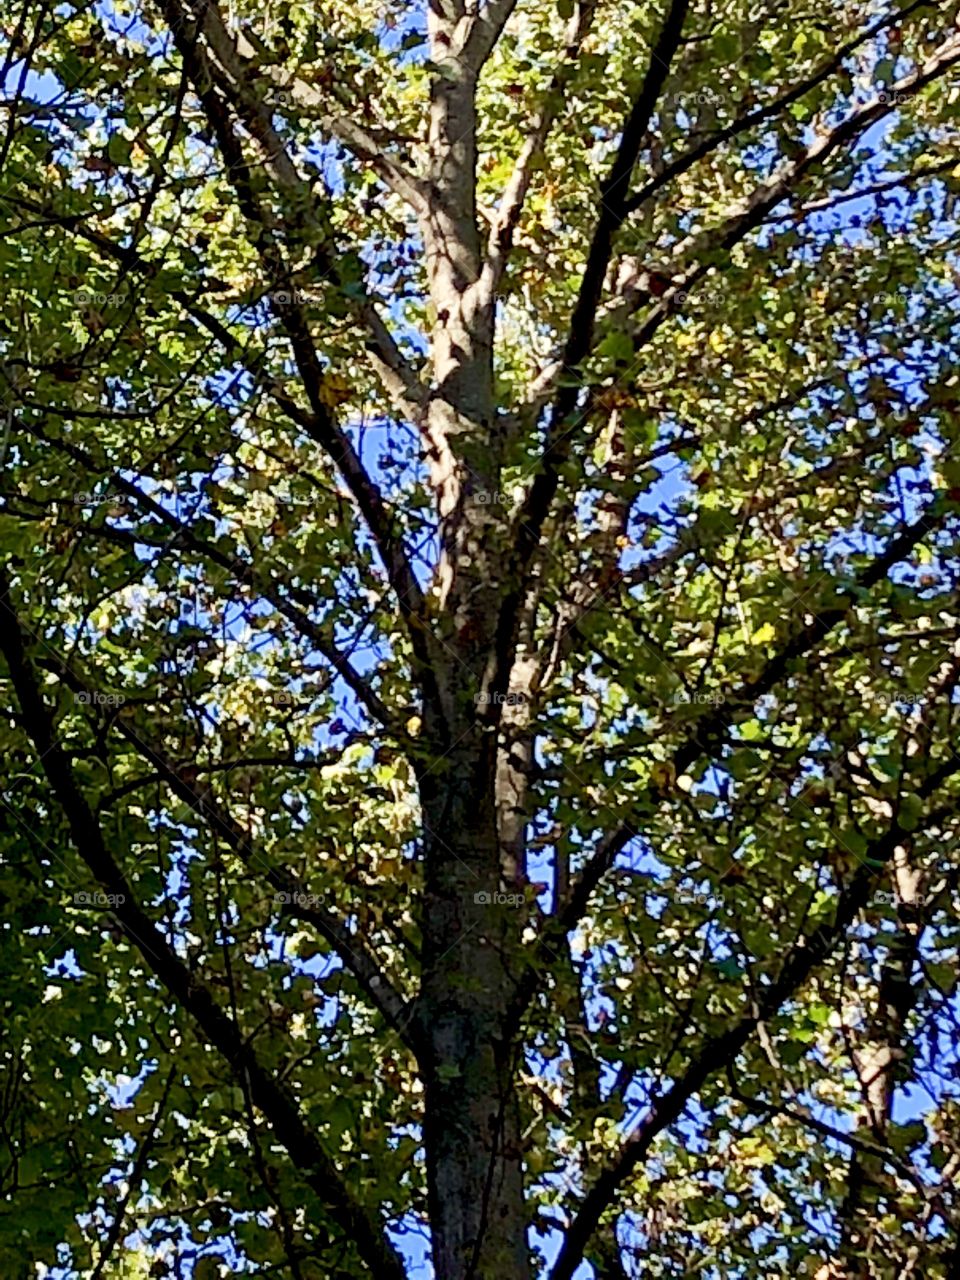 Leaves on the tree